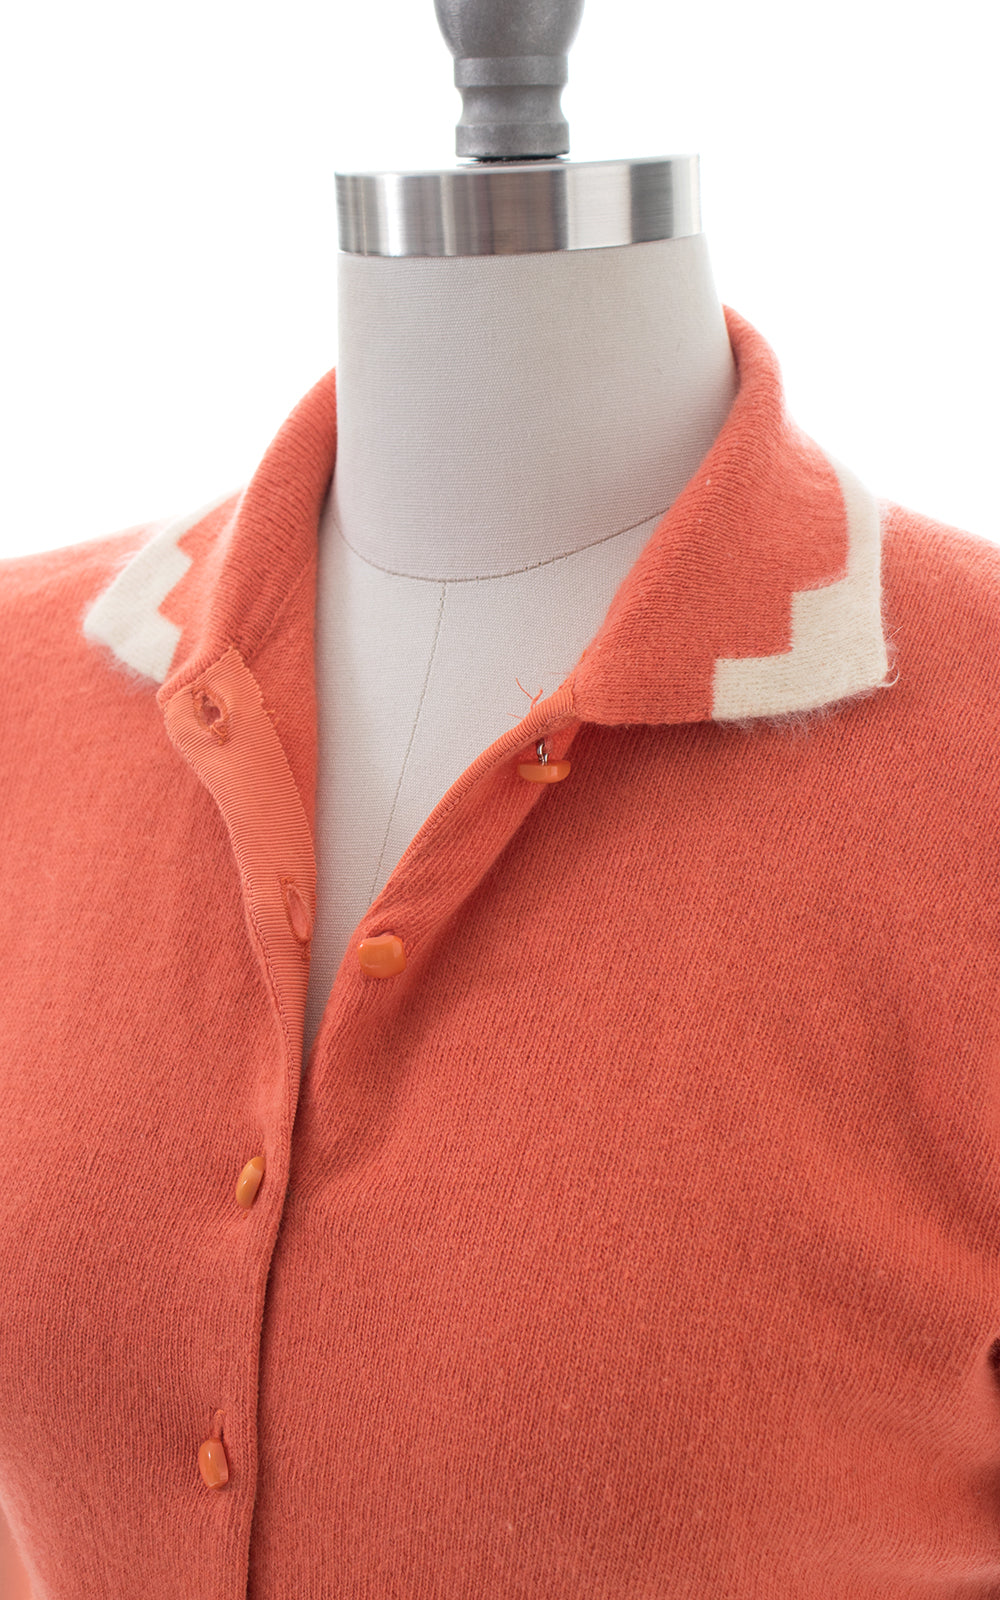 1950s Peach Wool & Angora Sweater To